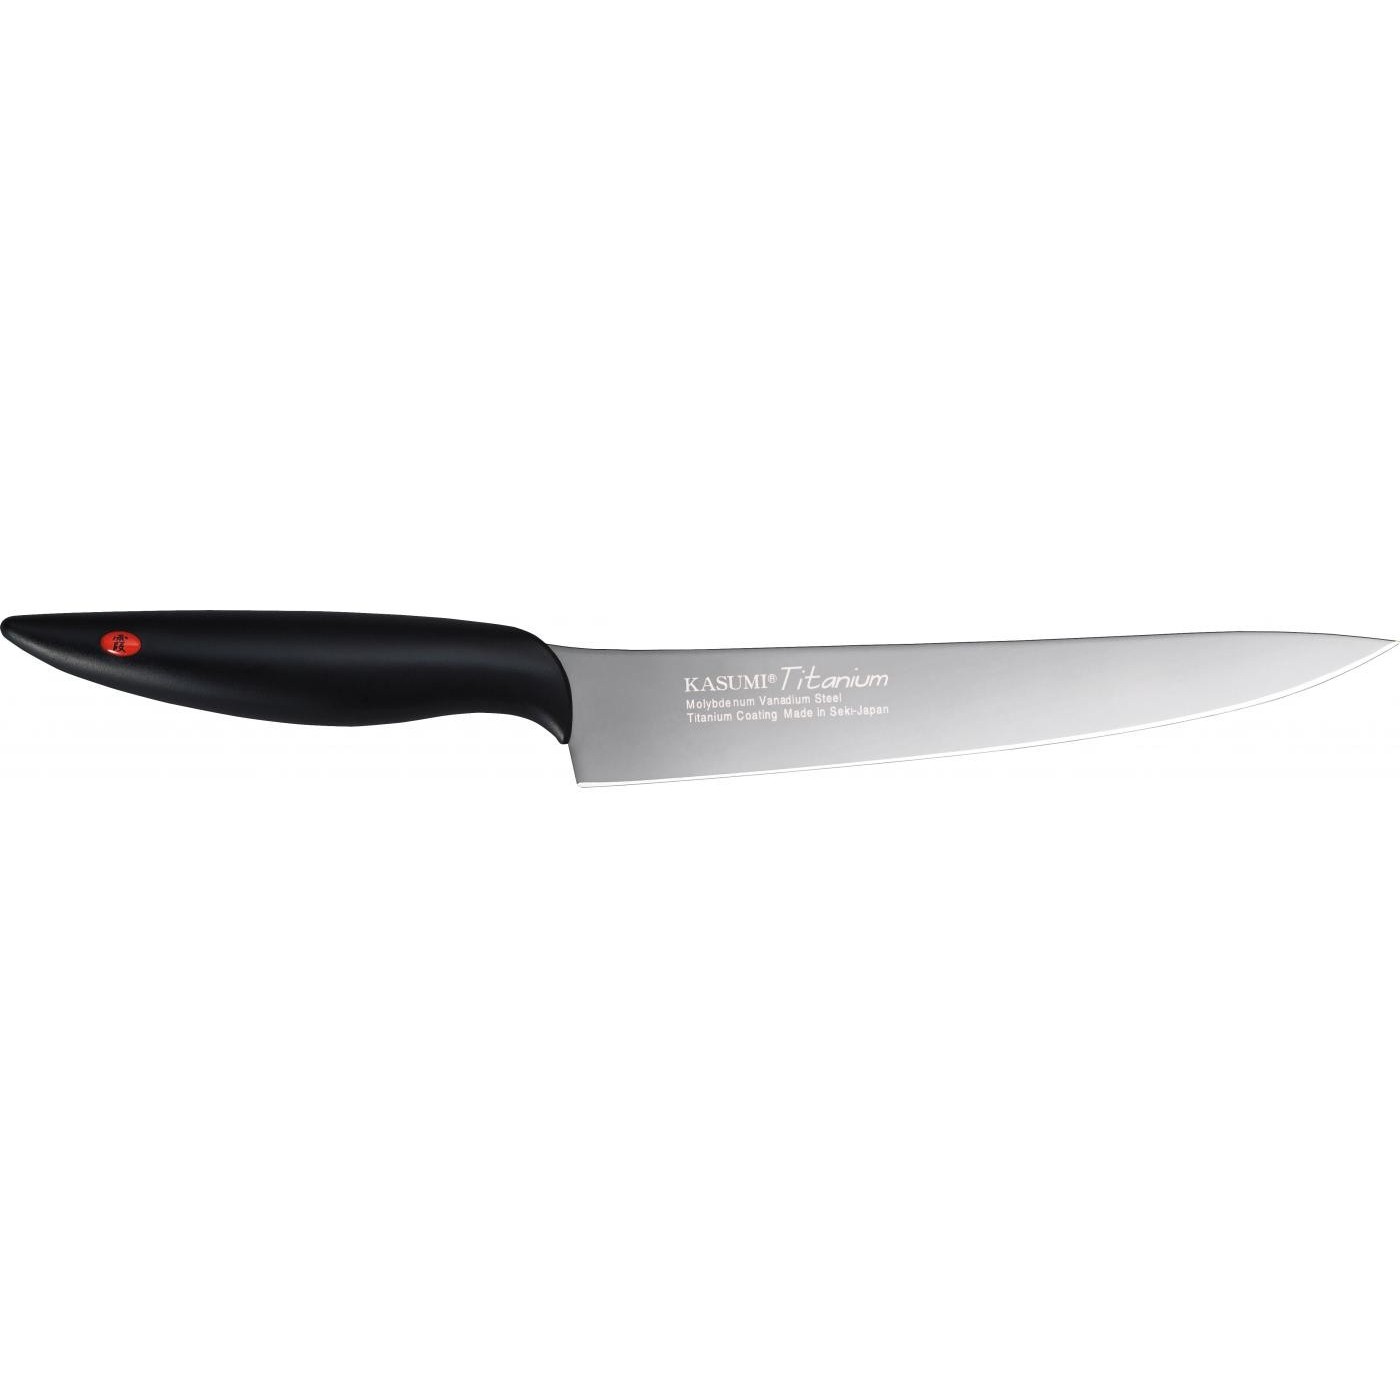 Couteau à découper 20cm - Kasumi Titanium graphite KTG3